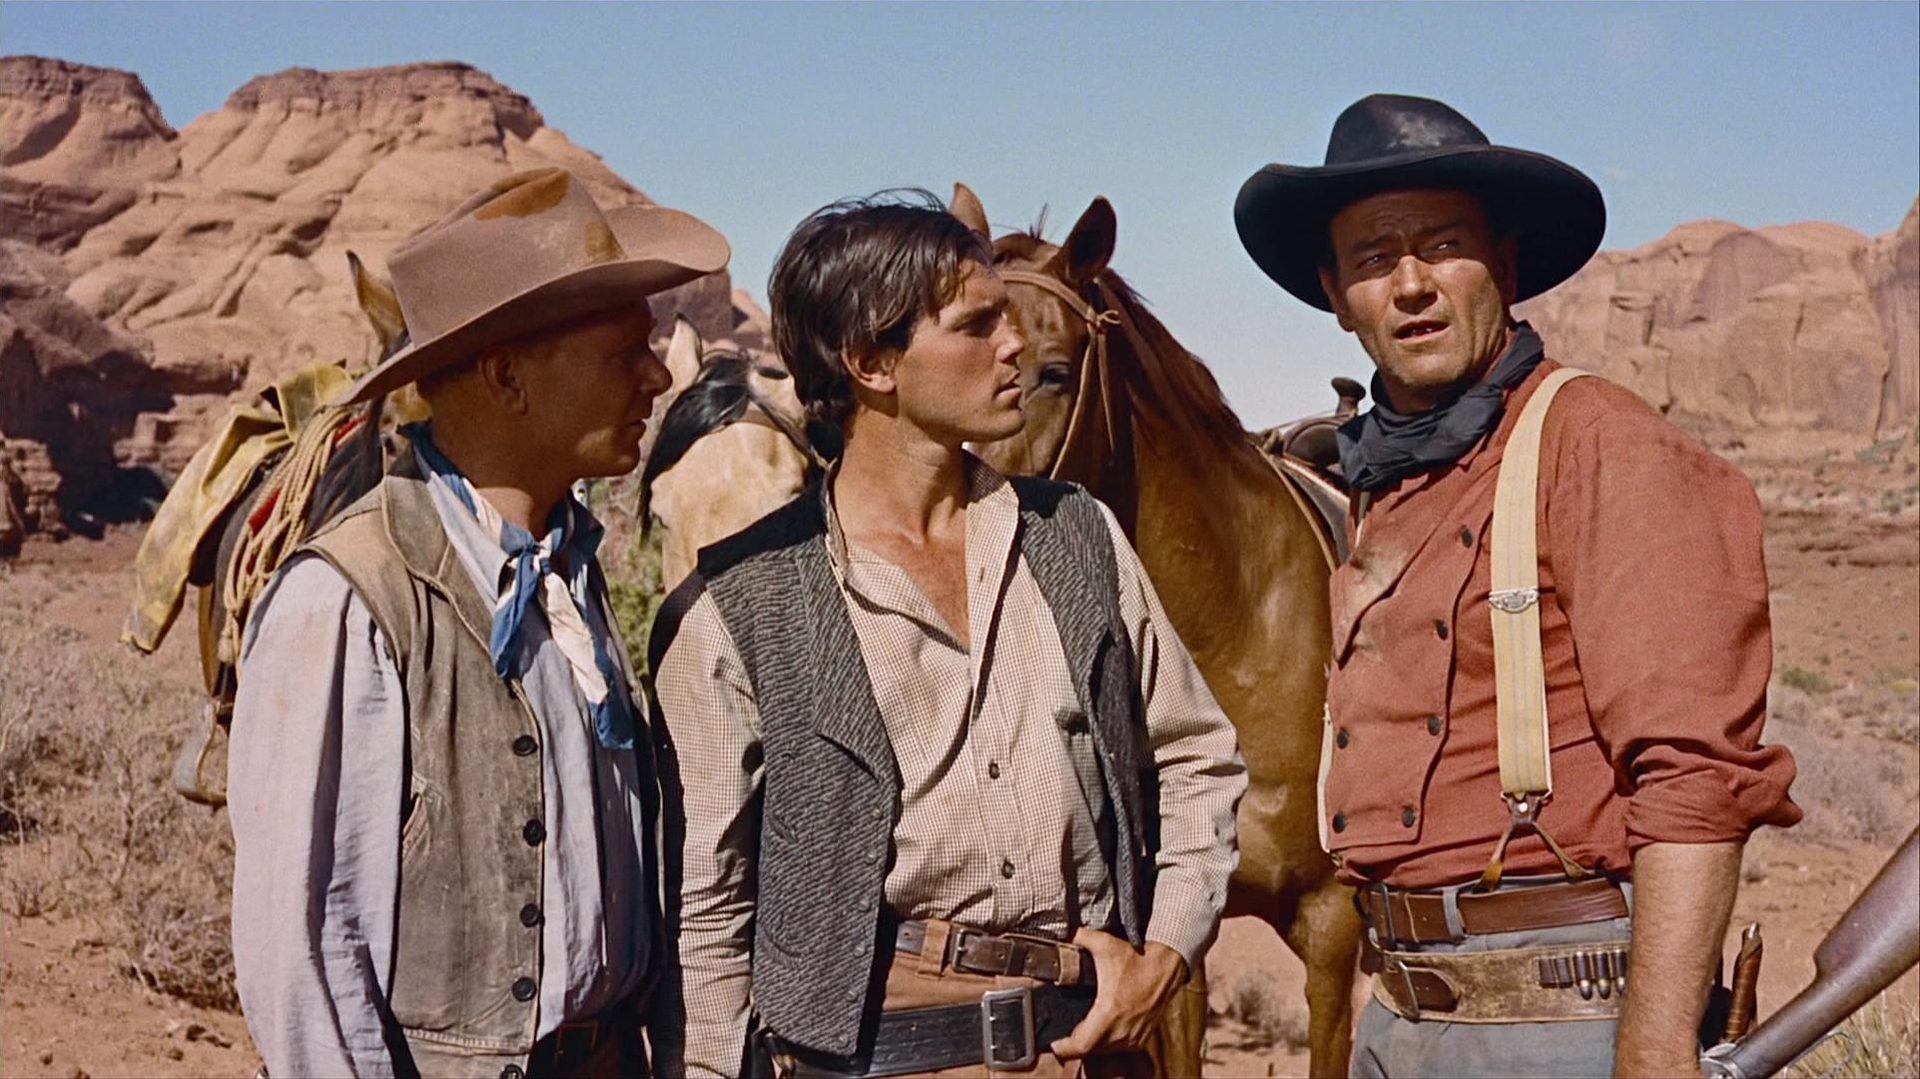 John Wayne als Ethan Edwards mit zwei Kompagnons bei warmem Klima in der Wüste.